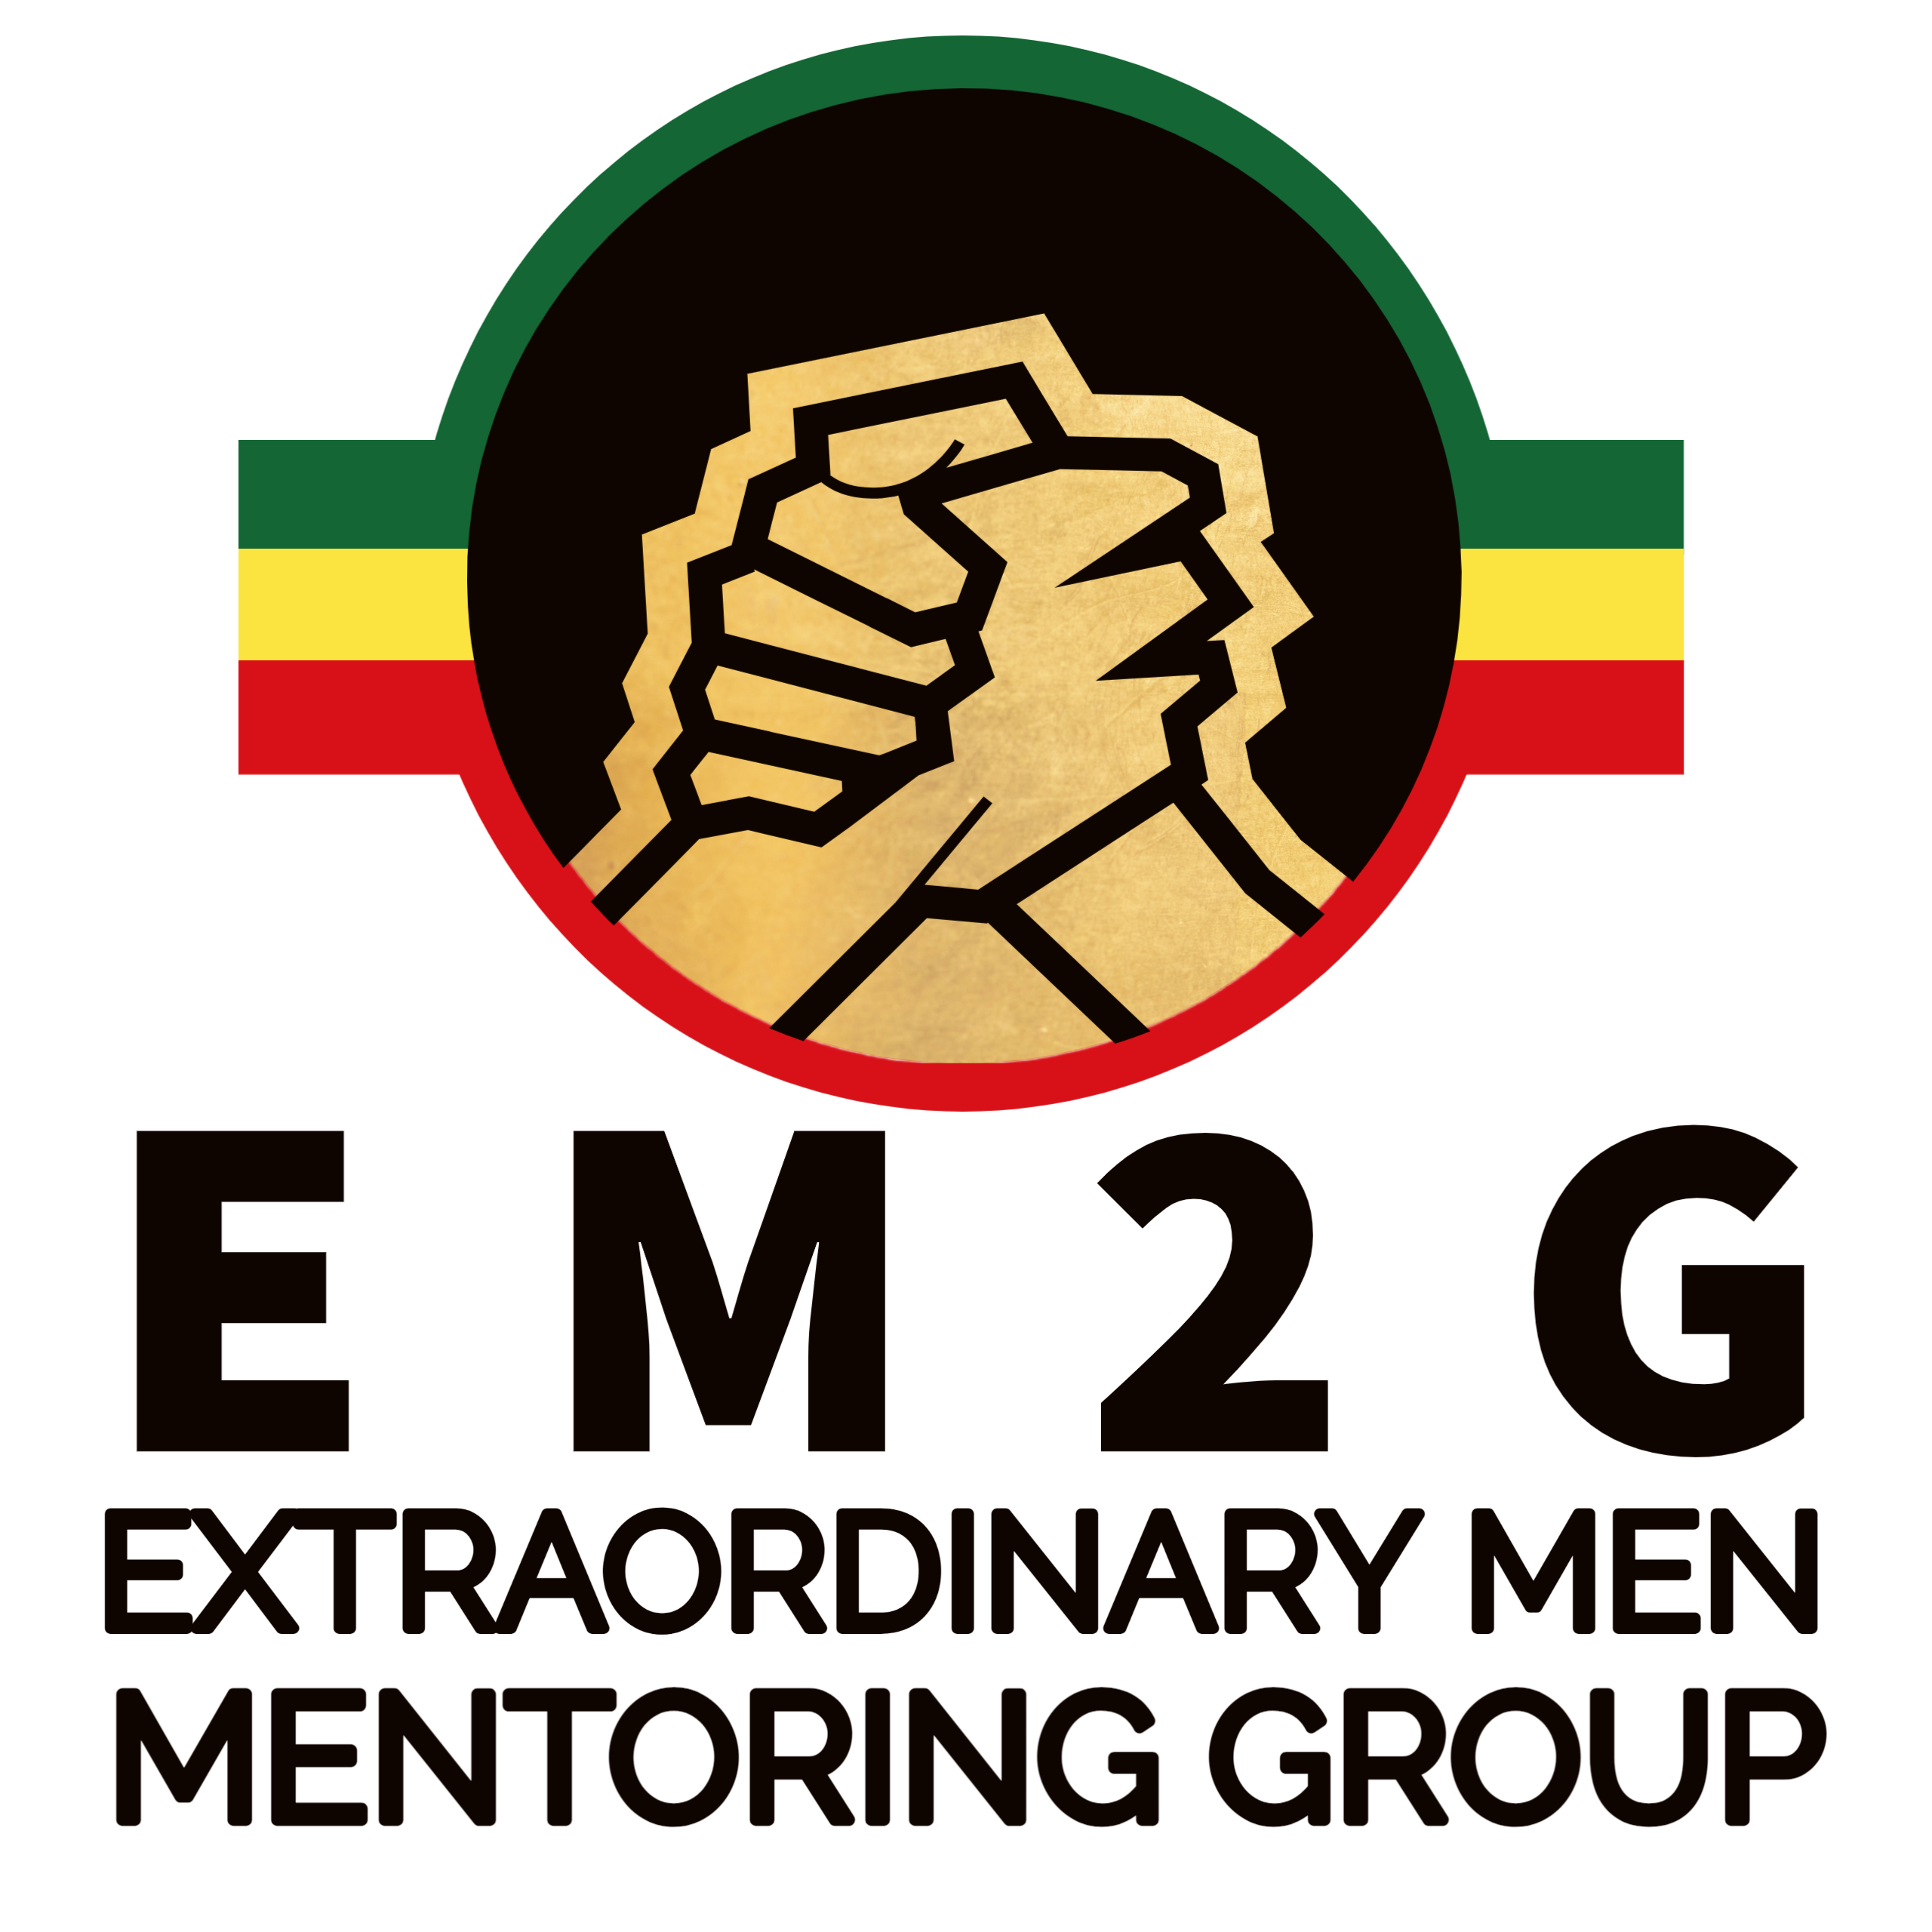 Extraordinary Men Mentoring Group logo